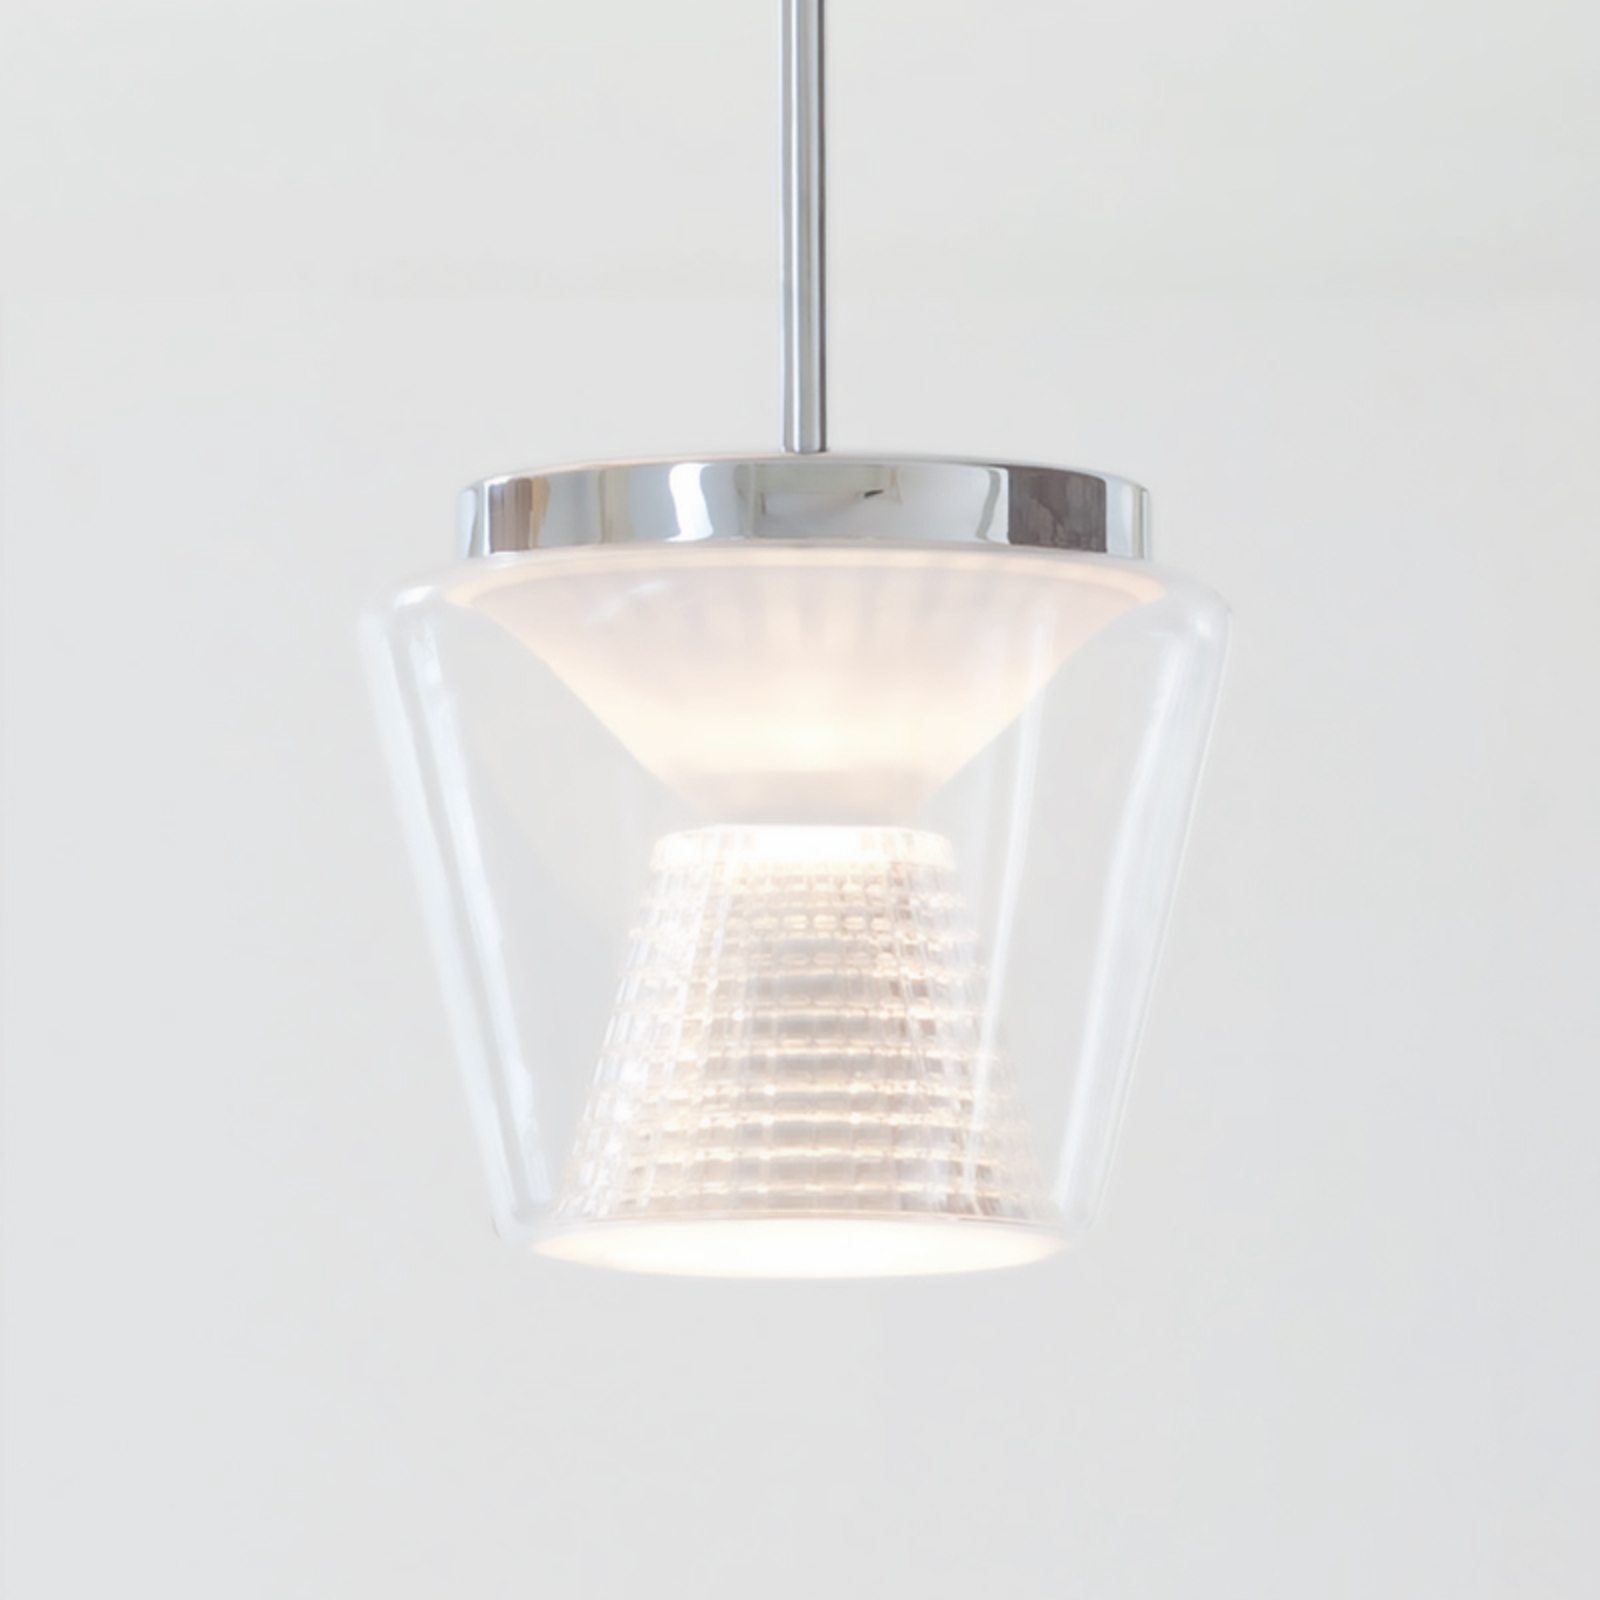 Lampa wisząca LED Annex - szkło kryształowe